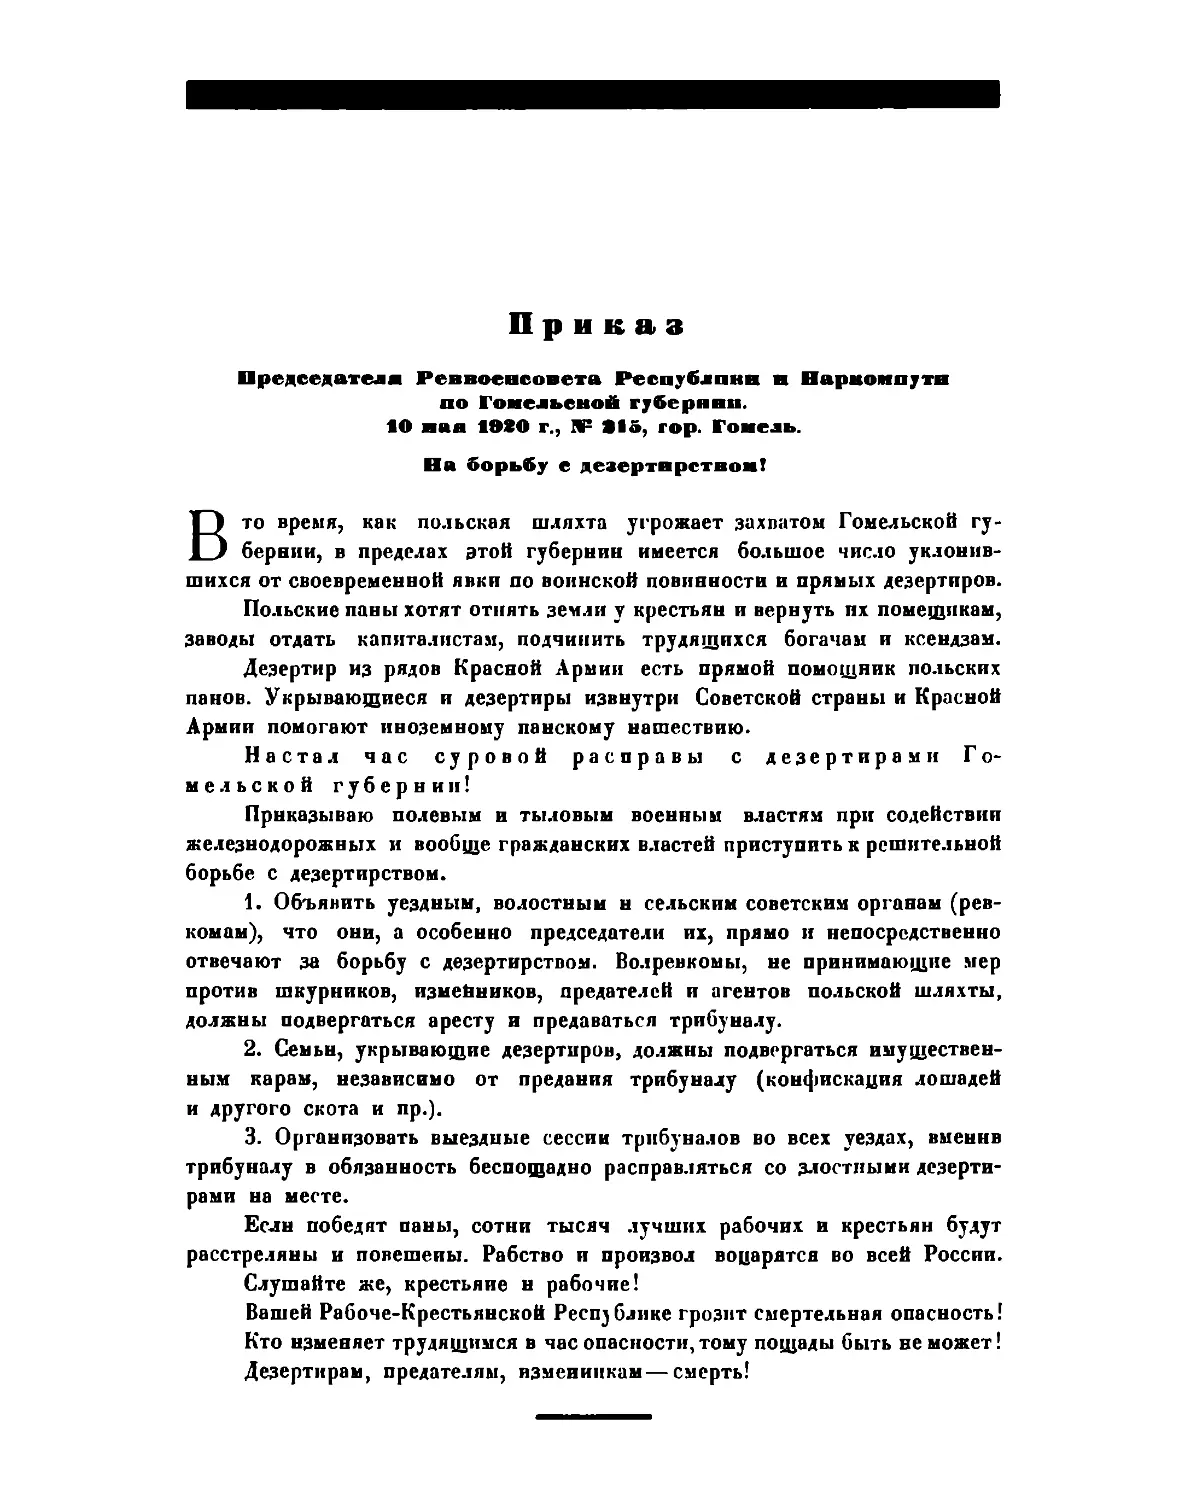 Приказ Пред. РВСР и Наркомпути по Гомельской губ. от 10 май 1920 г. № 215, гор. Гомель